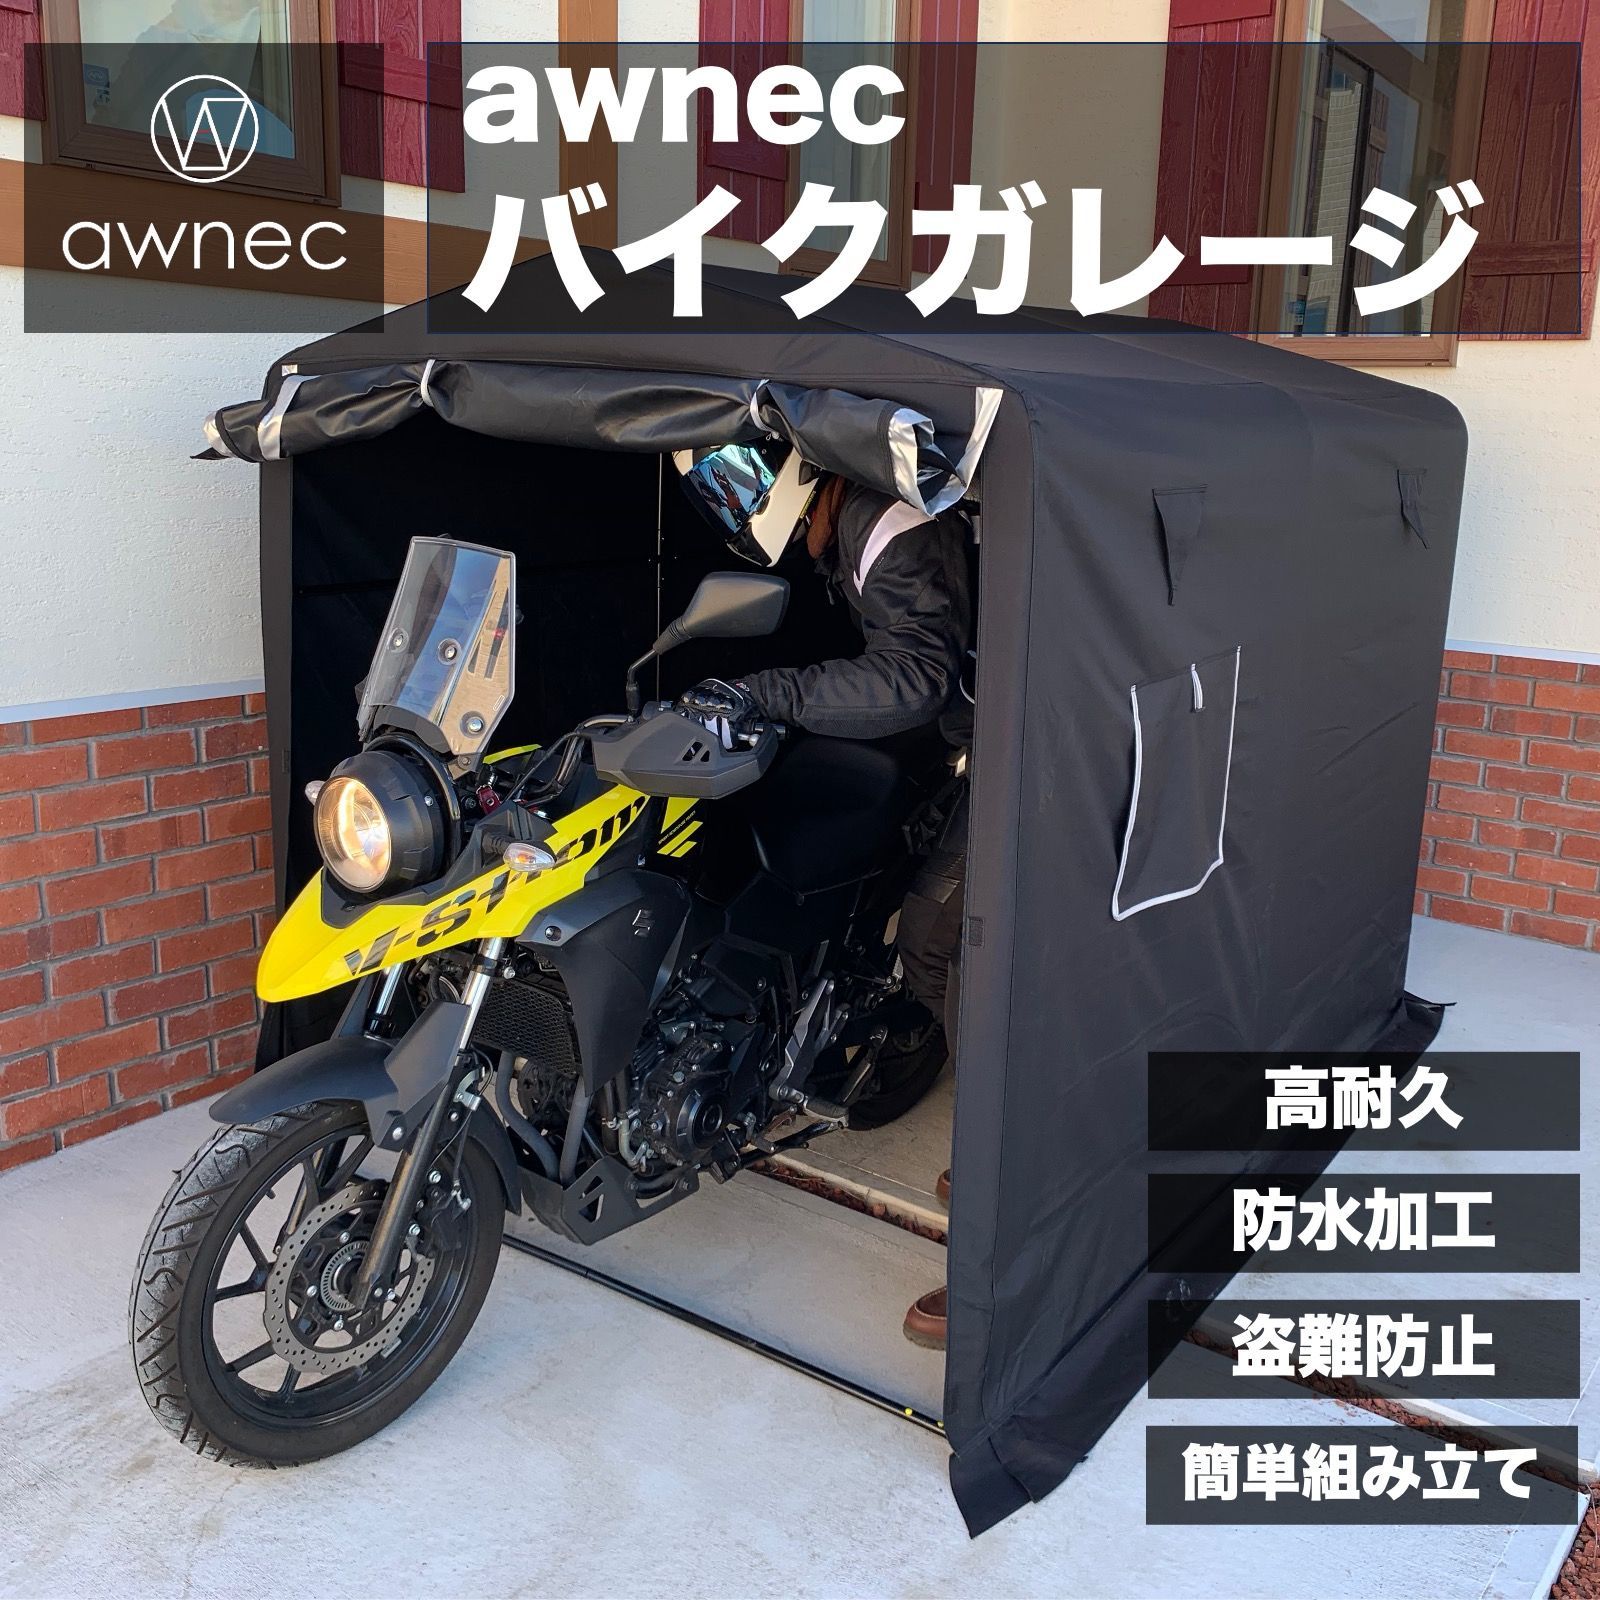 awnec バイクガレージ バイク ガレージ サイクルハウス (横)160×(奥)230×(高)175cm 自転車ガレージ サイクルポート 2台 3台  バイクテント 収納 組み立て式 防水 ガレージテント バンシルショップ メルカリ